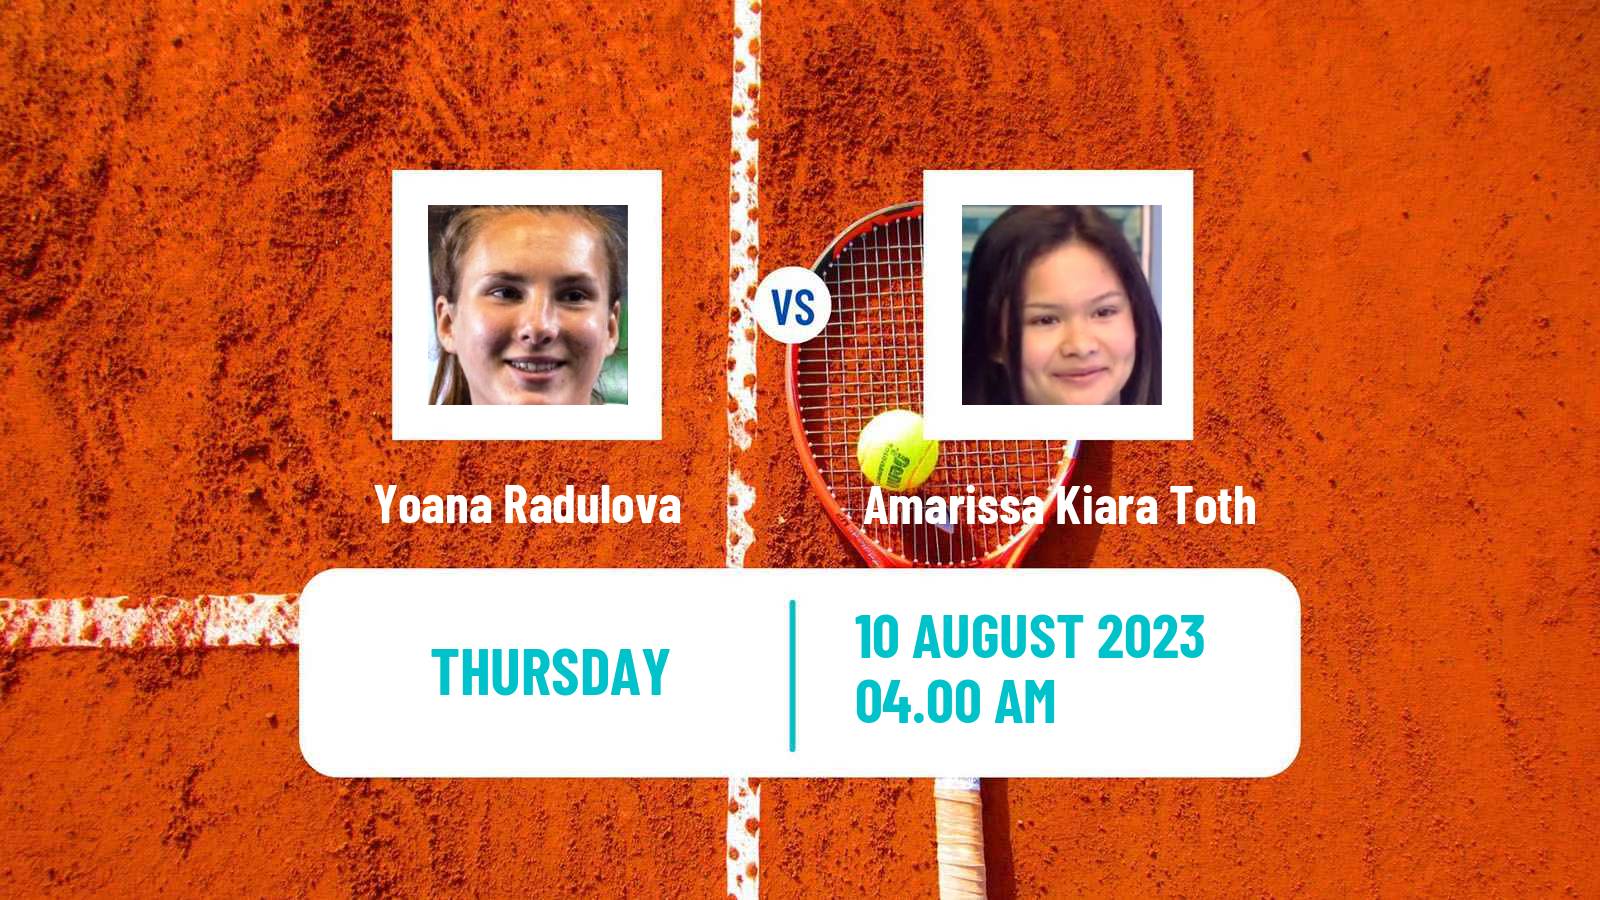 Tennis ITF W25 Osijek 2 Women Yoana Radulova - Amarissa Kiara Toth